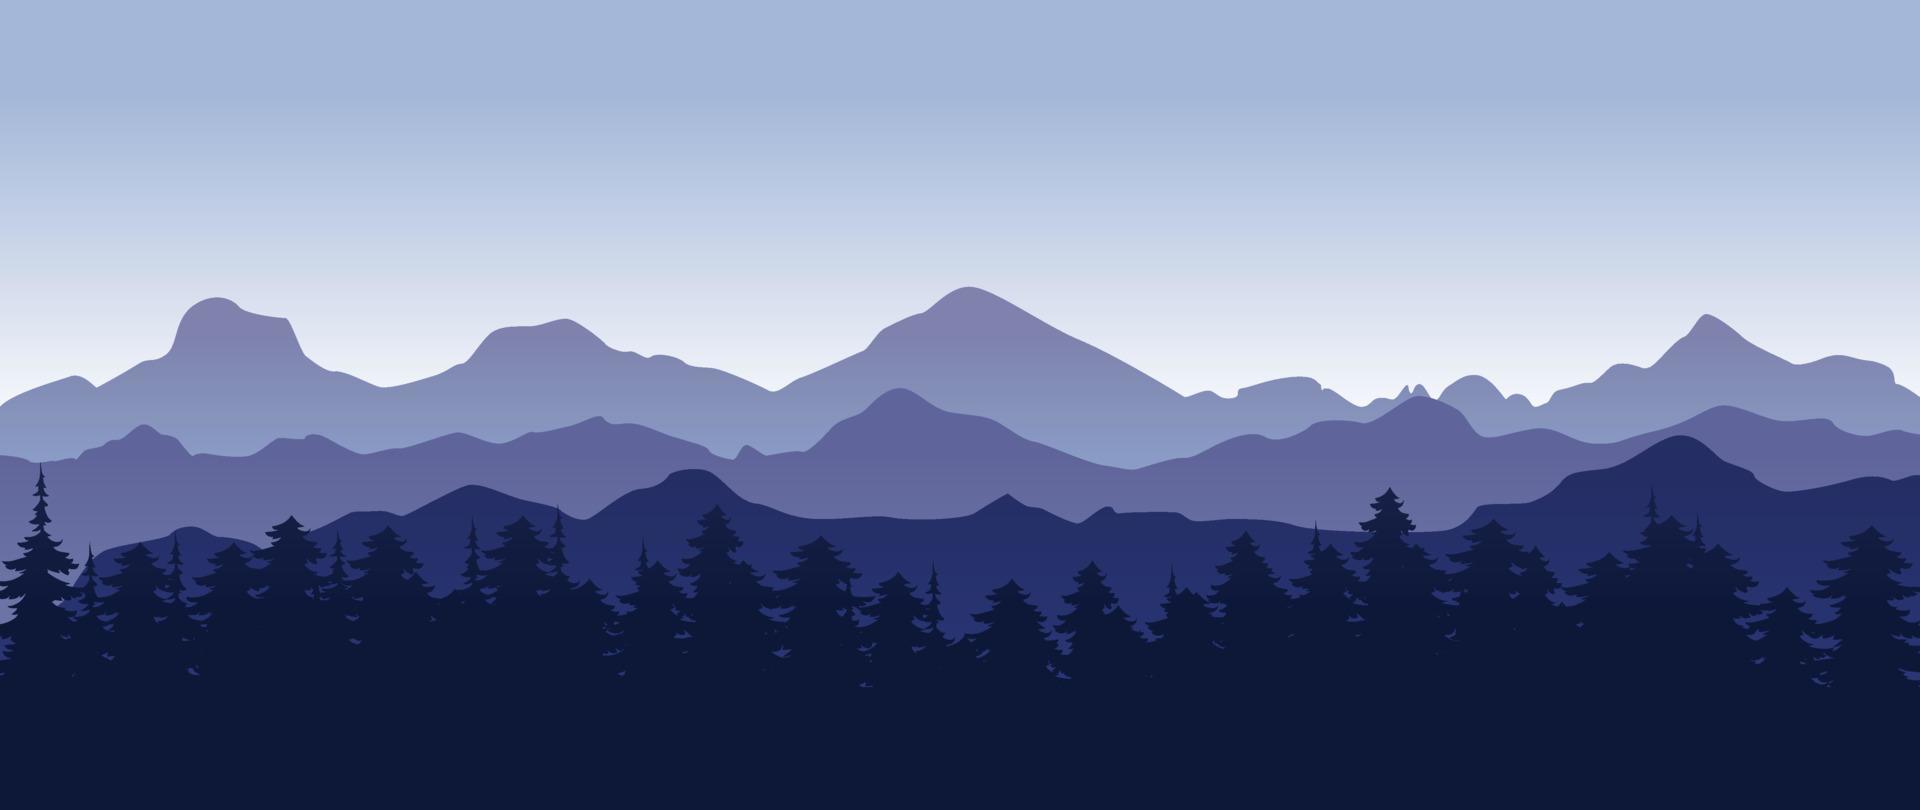 hermosa oscuro azul montaña paisaje con niebla y bosque. pino bosque. amanecer y puesta de sol en montañas. al aire libre y naturaleza concepto. vector ilustración.